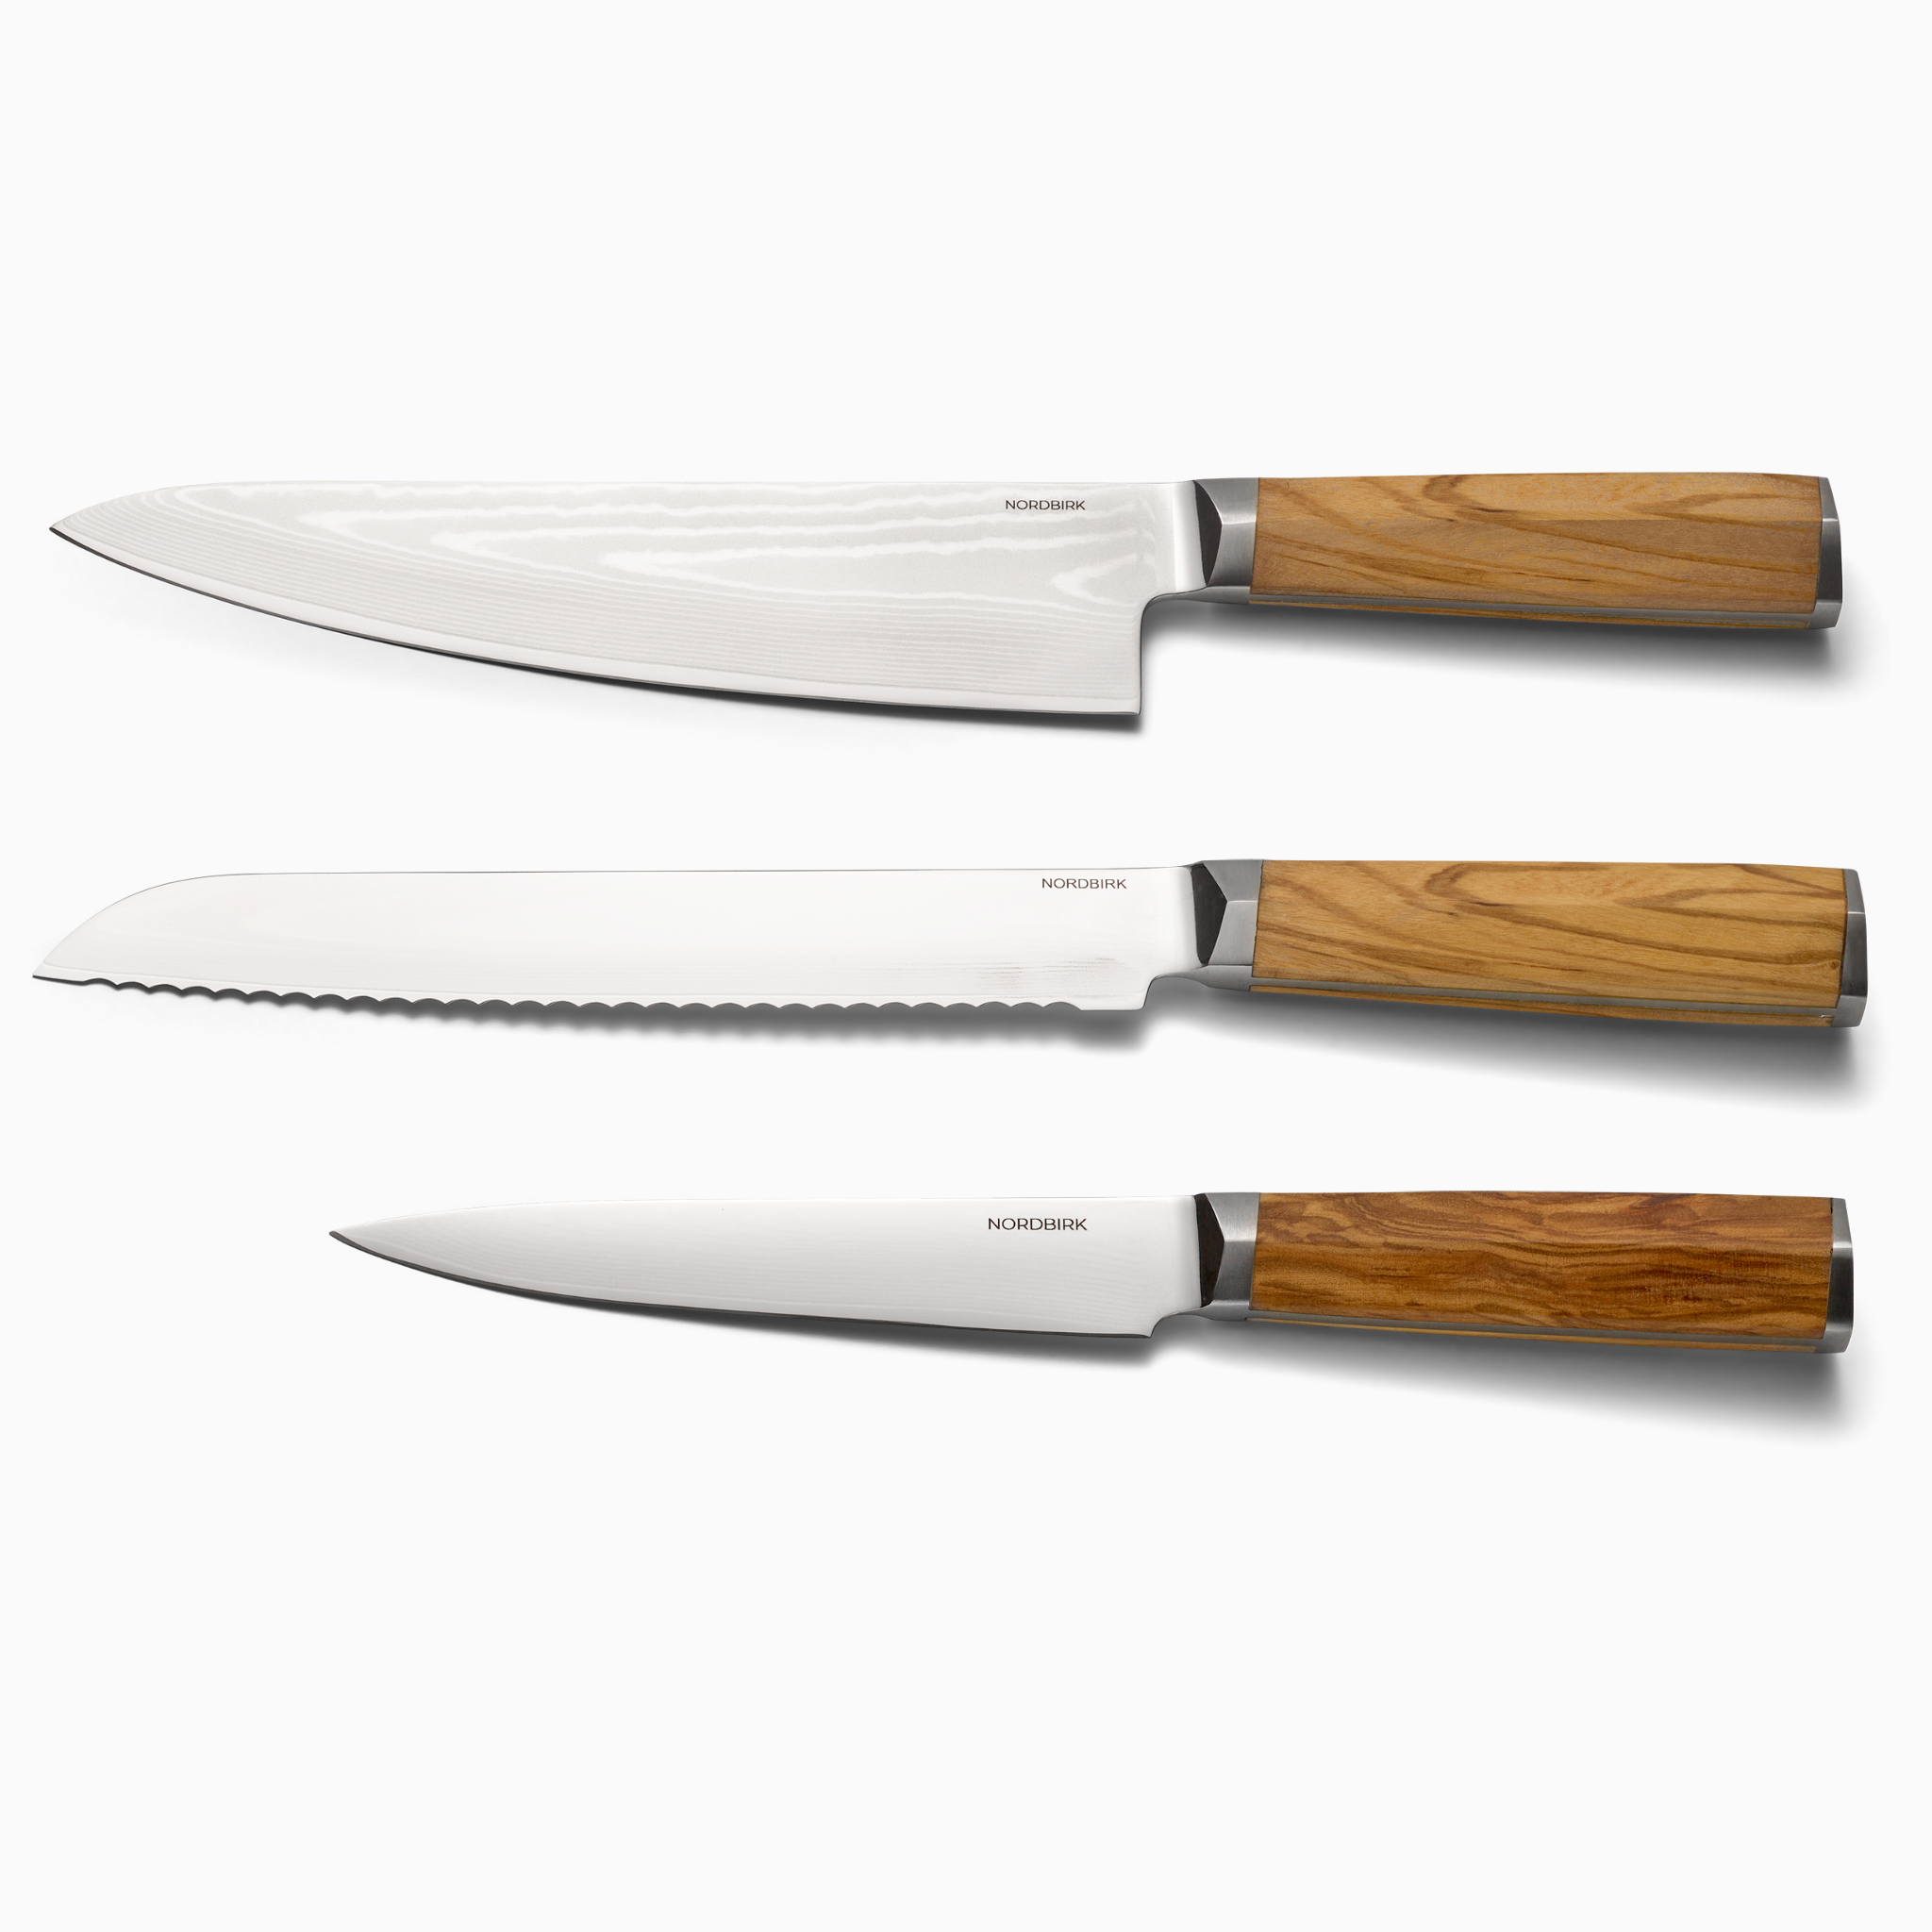 De essentielle: Uundværlige knive til ethvert køkken